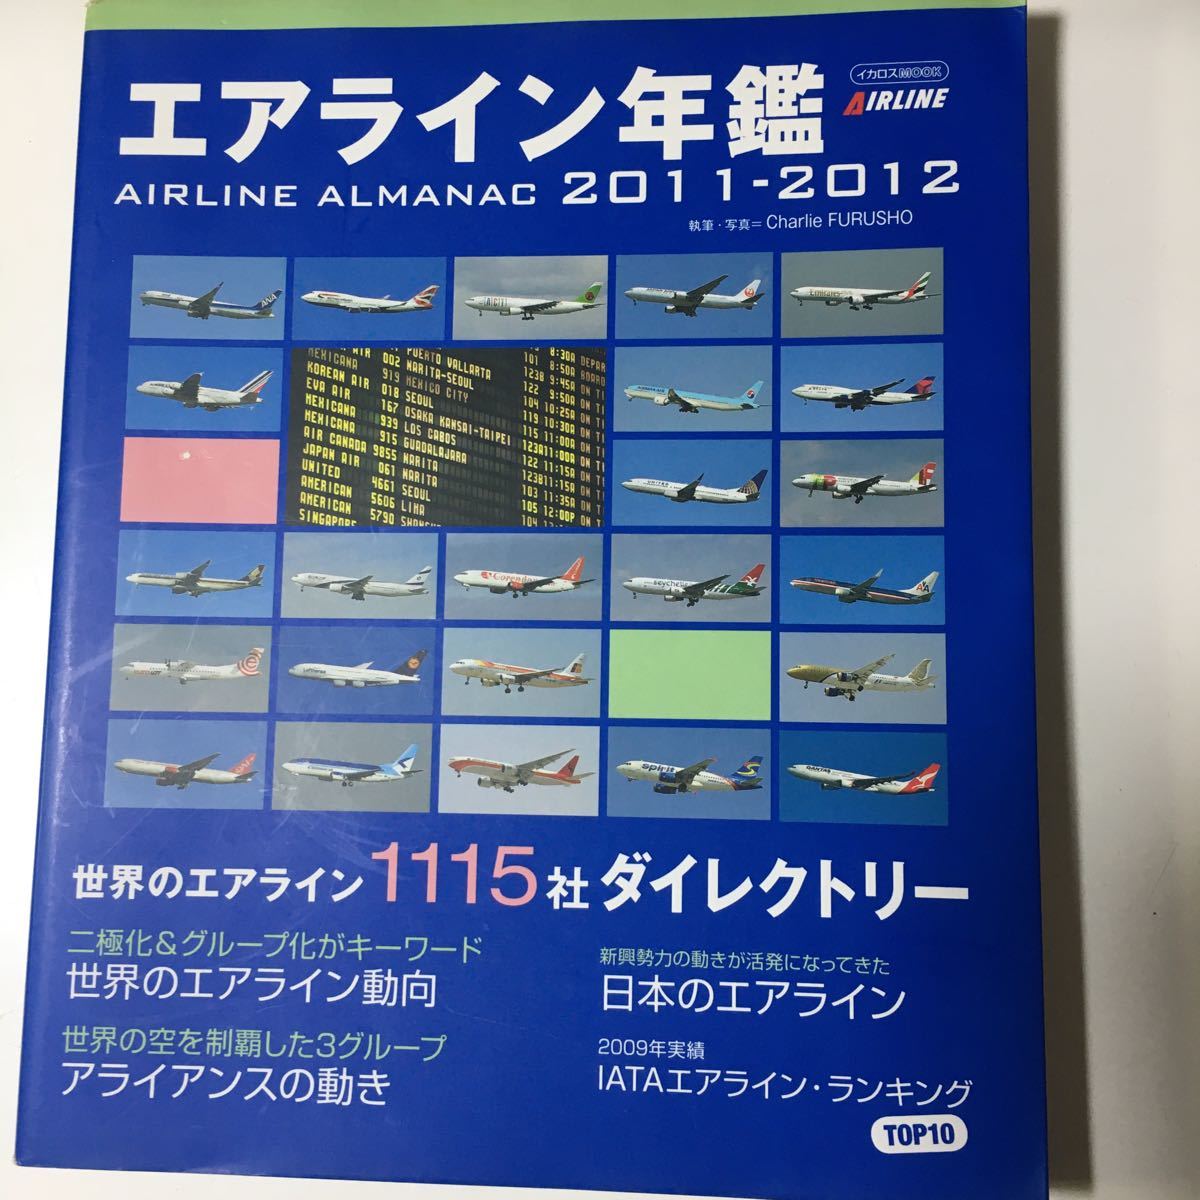 ☆本飛行機「エアライン年鑑2011-2012」航空機JALANALCC空港_画像1